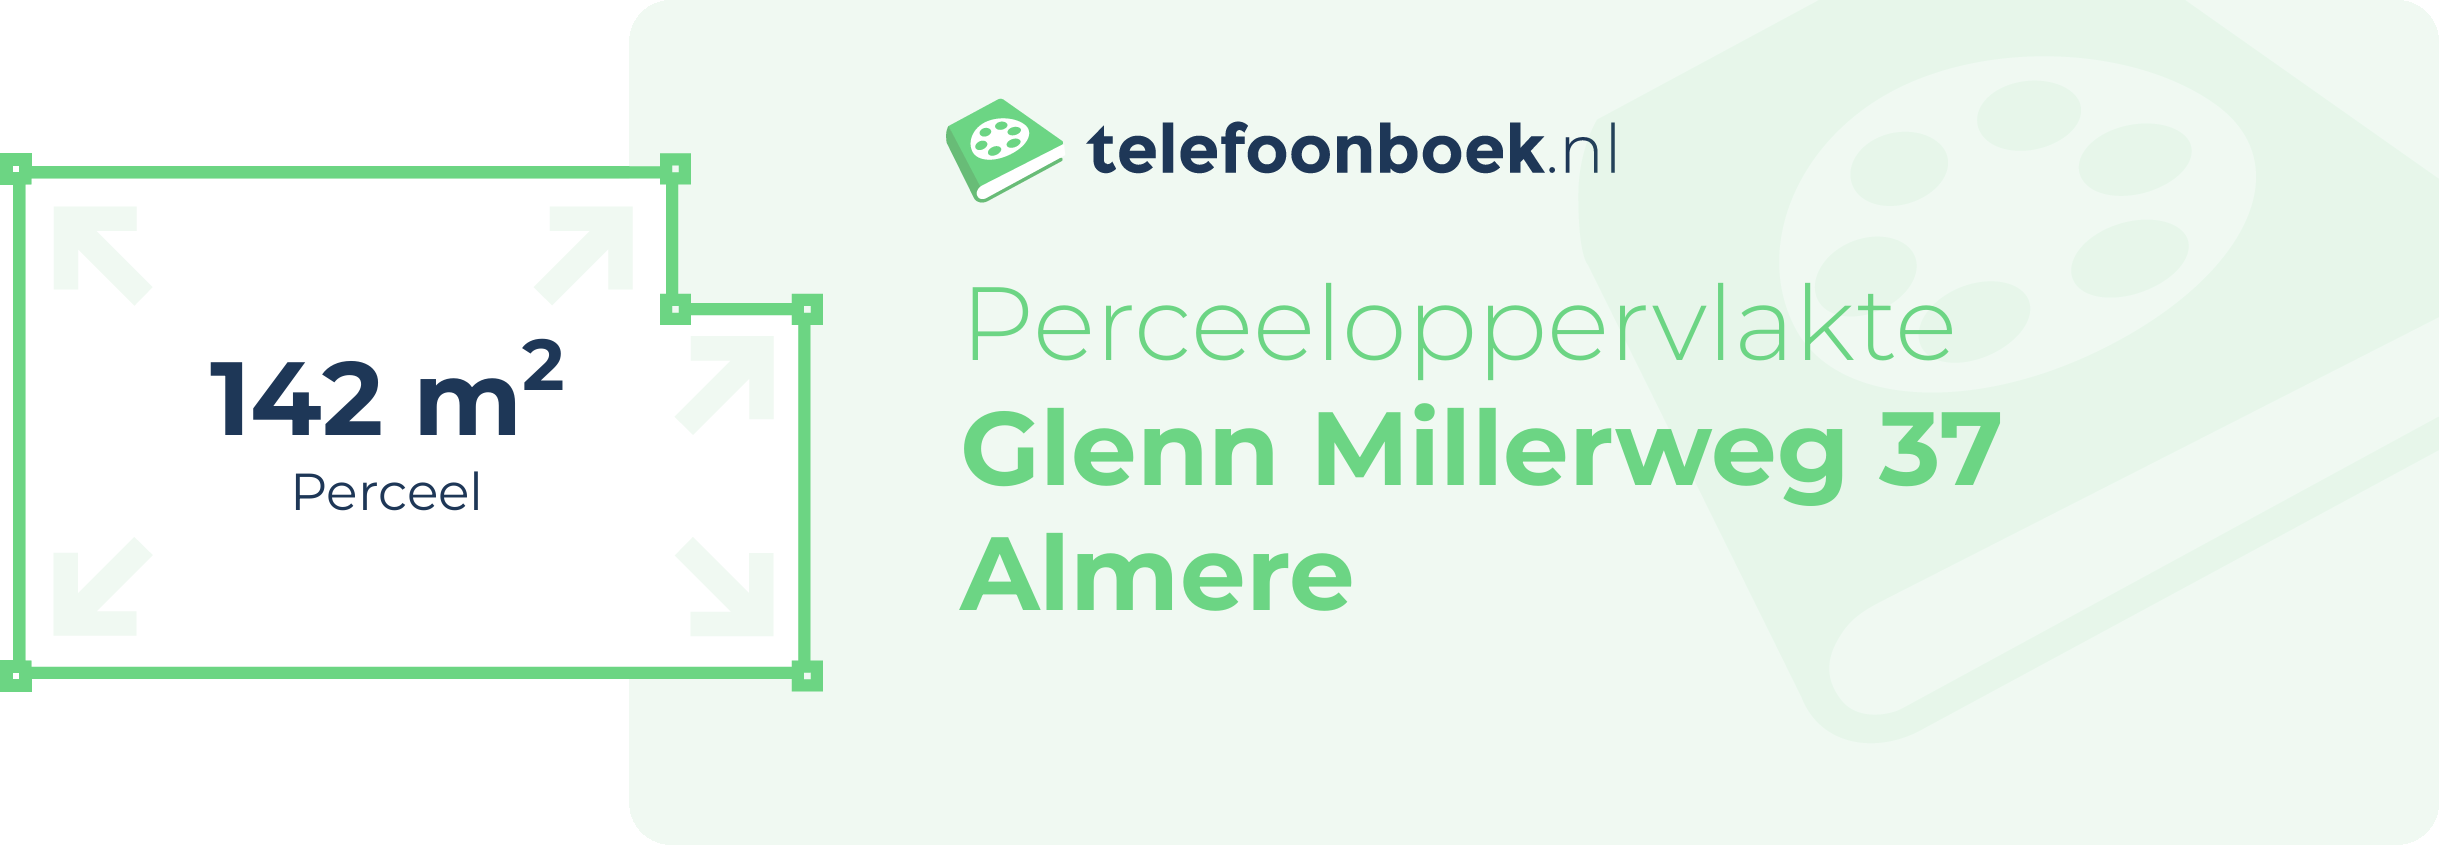 Perceeloppervlakte Glenn Millerweg 37 Almere